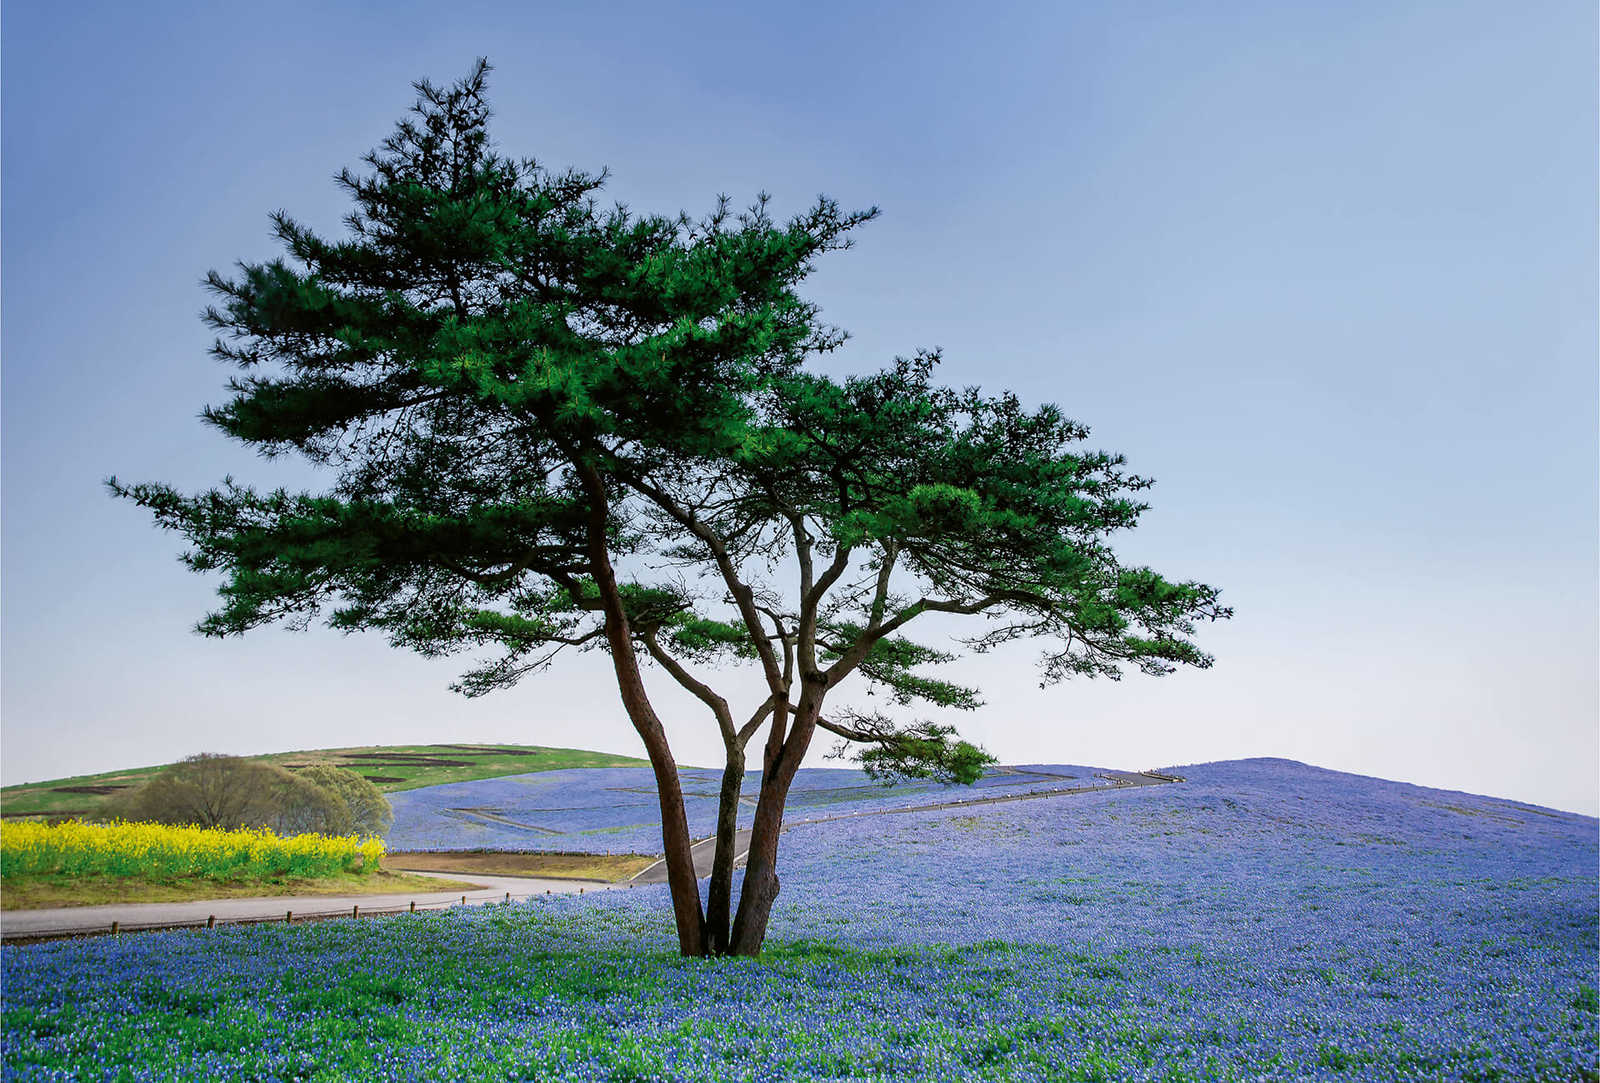             Fototapete Landschaft in Japan mit Baum
        